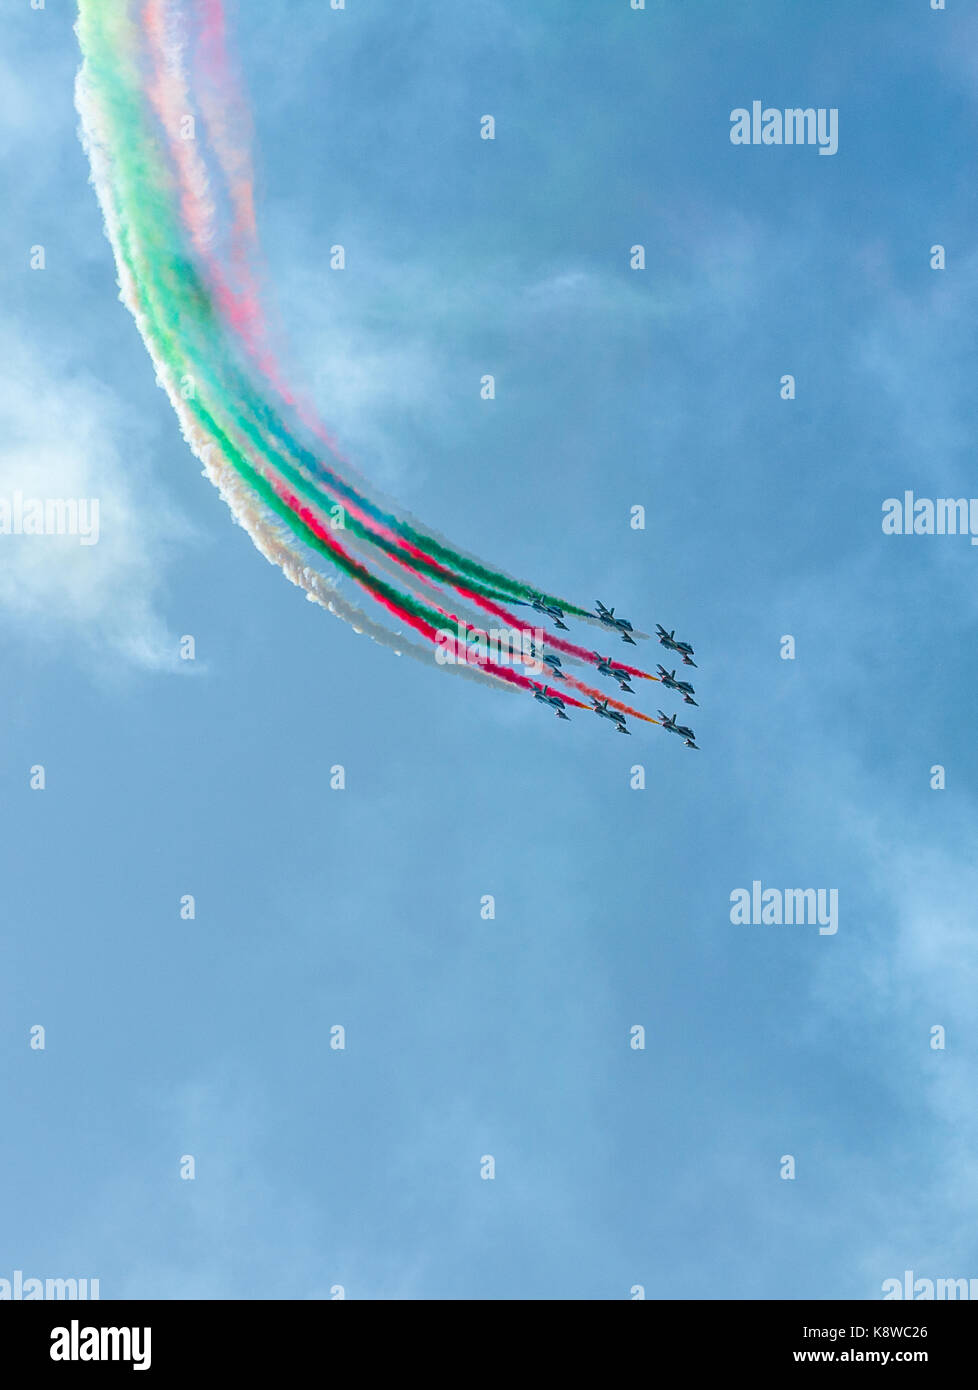 Frecce Tricolori, the Italian air display team Stock Photo